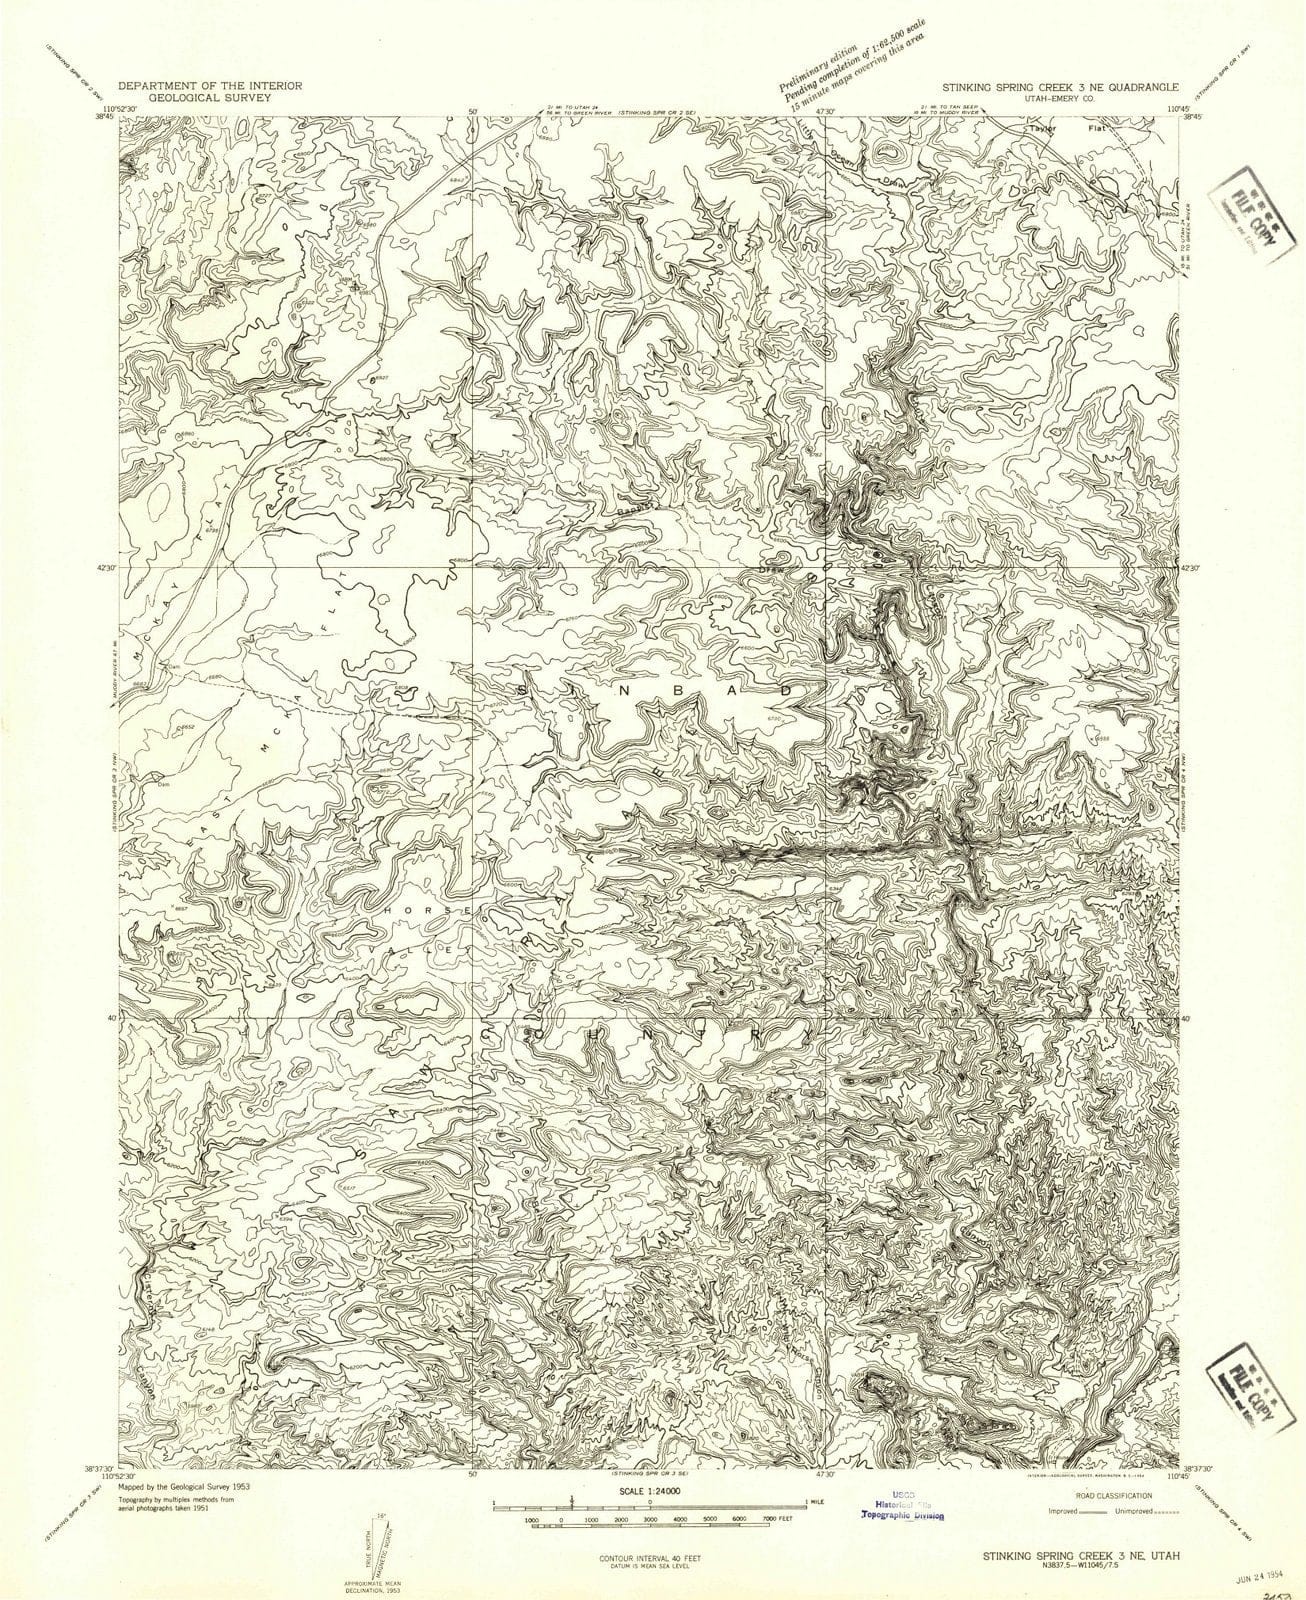 1954 Stinking Spring Creek 3, UT - Utah - USGS Topographic Map